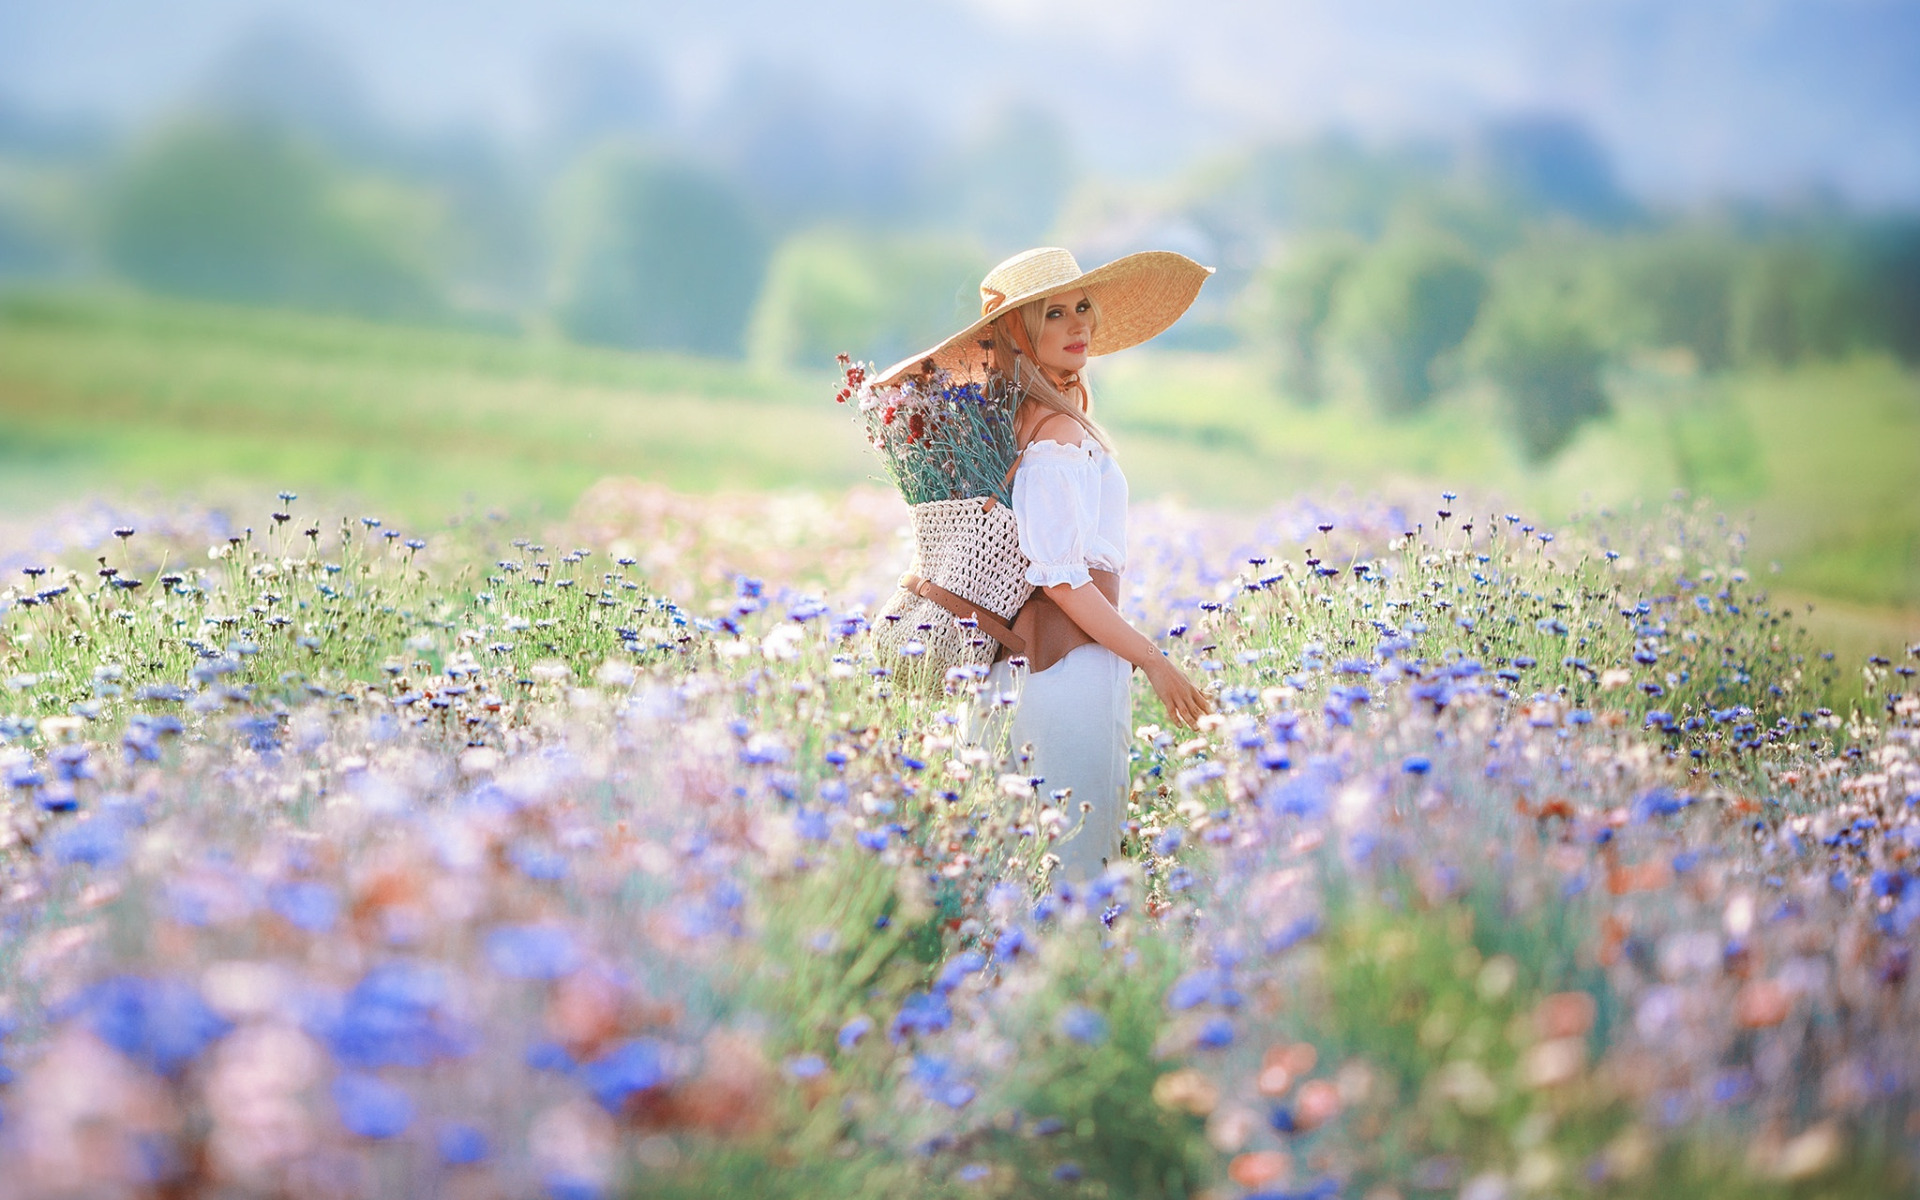 А дальше будет лето. Девушка лето. Женщина с полевыми цветами. Девушка в цветочном поле в шляпке. Девушка в поле с цветами.